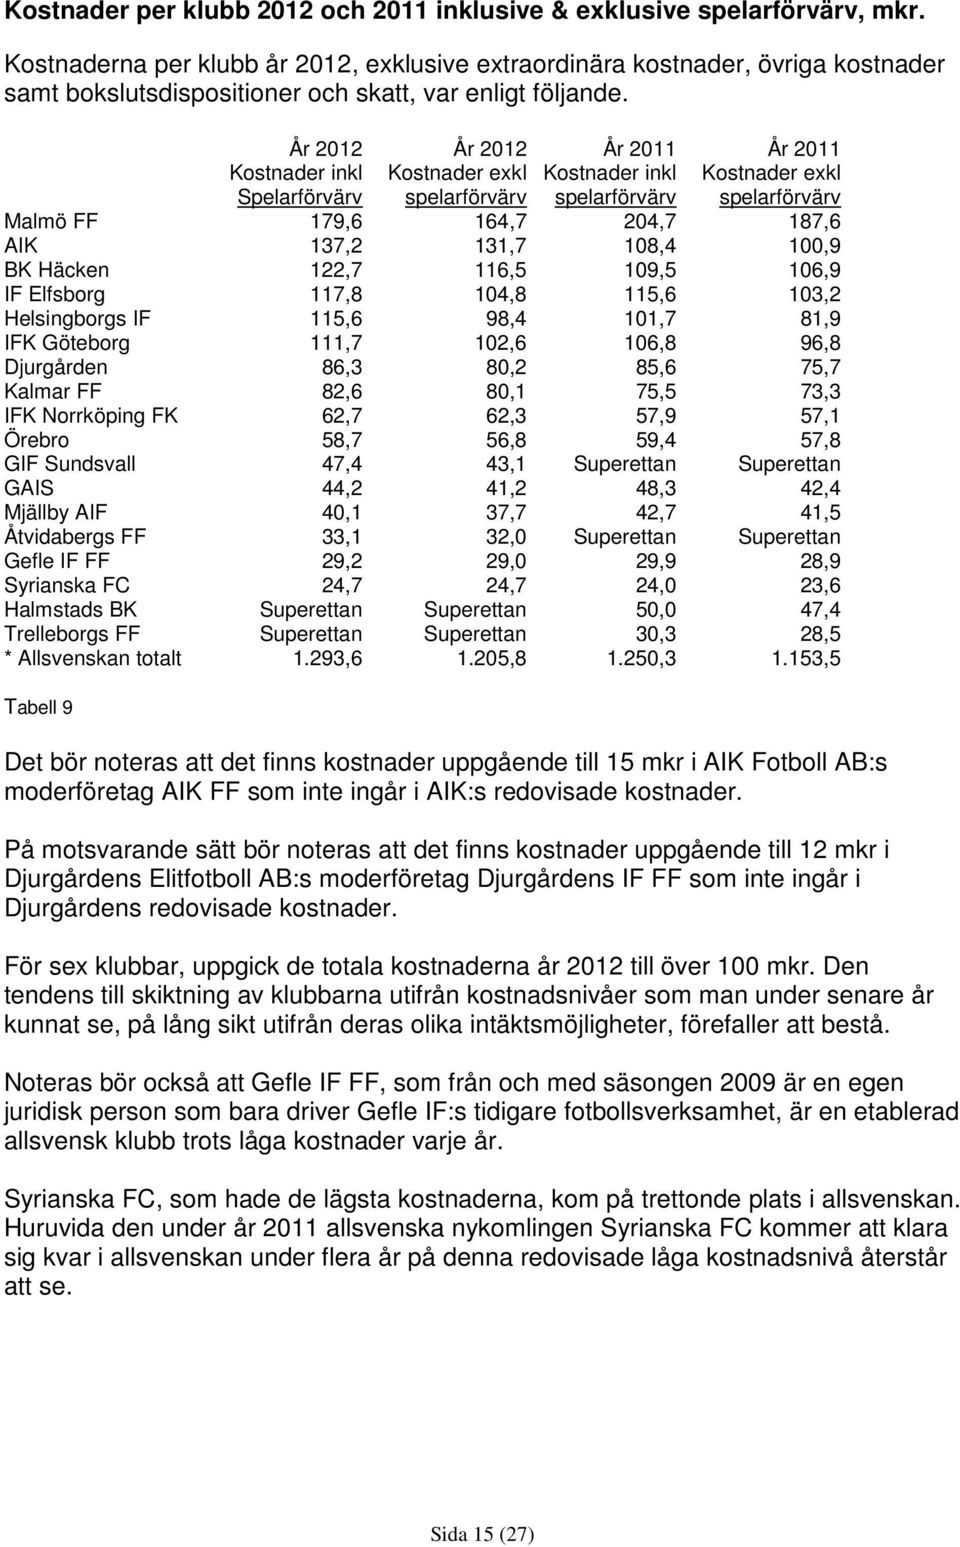 År 2012 Kostnader inkl Spelarförvärv År 2012 Kostnader exkl spelarförvärv År 2011 Kostnader inkl spelarförvärv År 2011 Kostnader exkl spelarförvärv Malmö FF 179,6 164,7 204,7 187,6 AIK 137,2 131,7